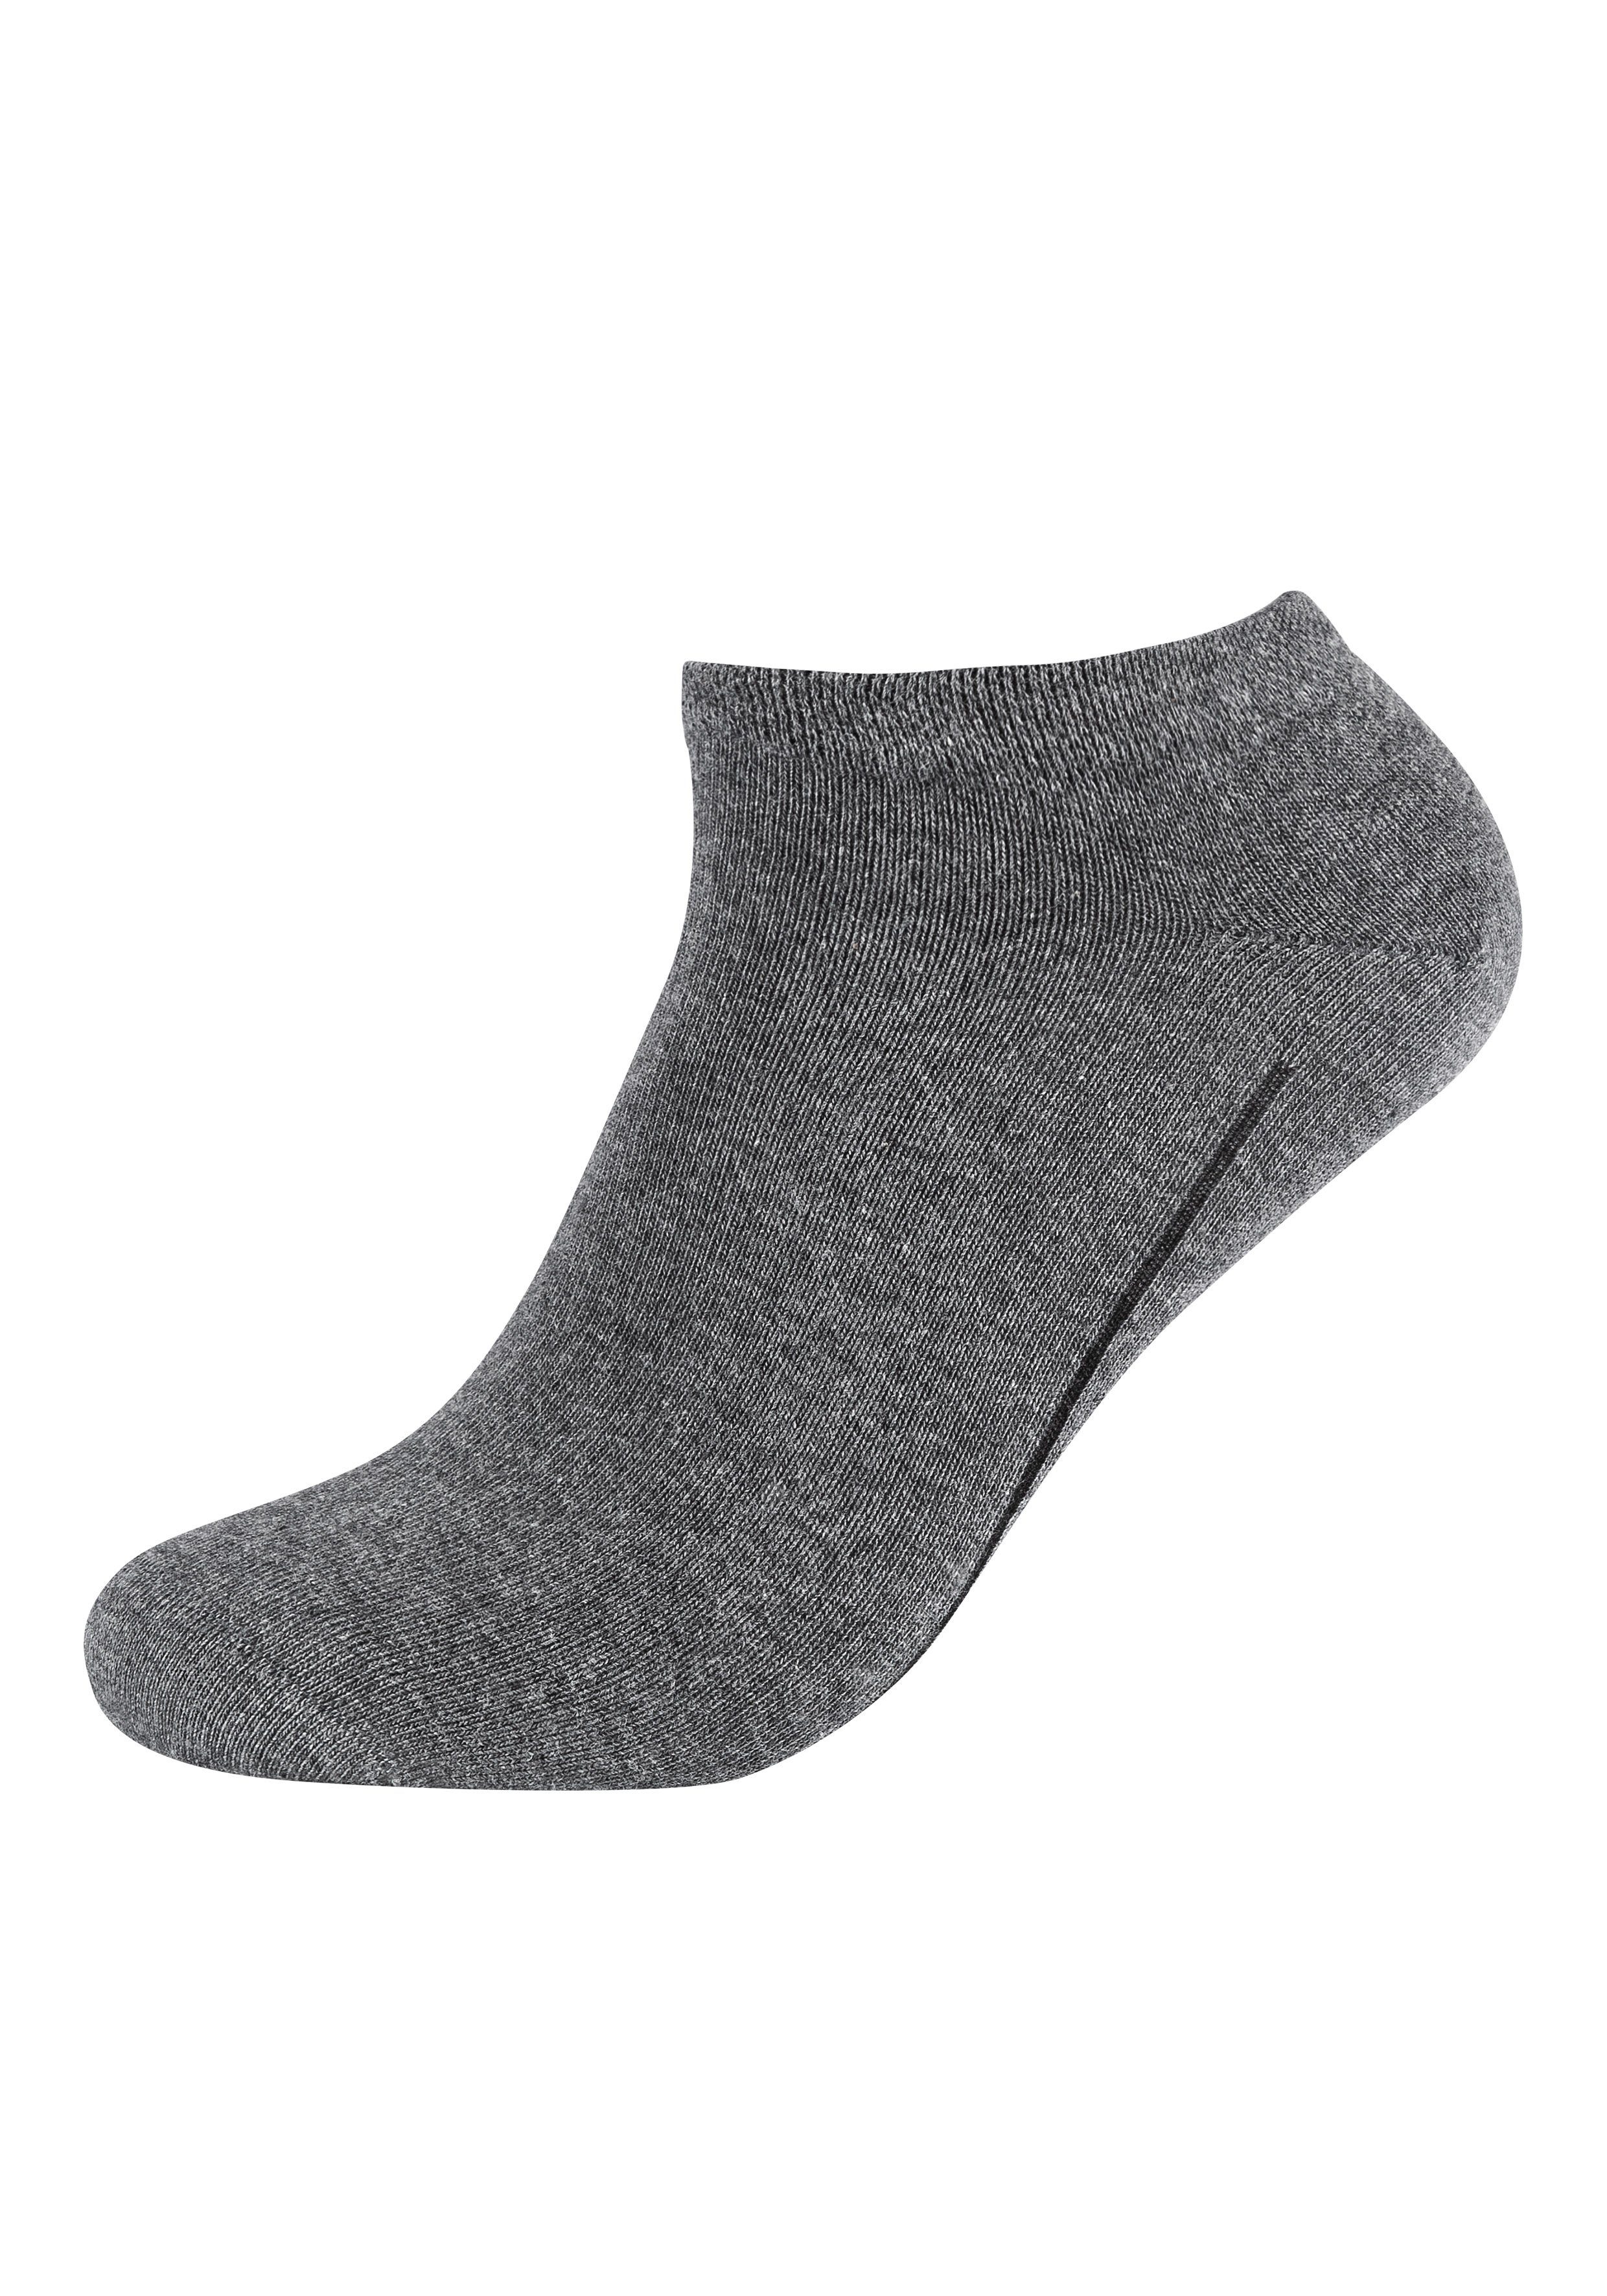 Socken weichem ca-soft Komfortbund grau mit (14-Paar) Camano